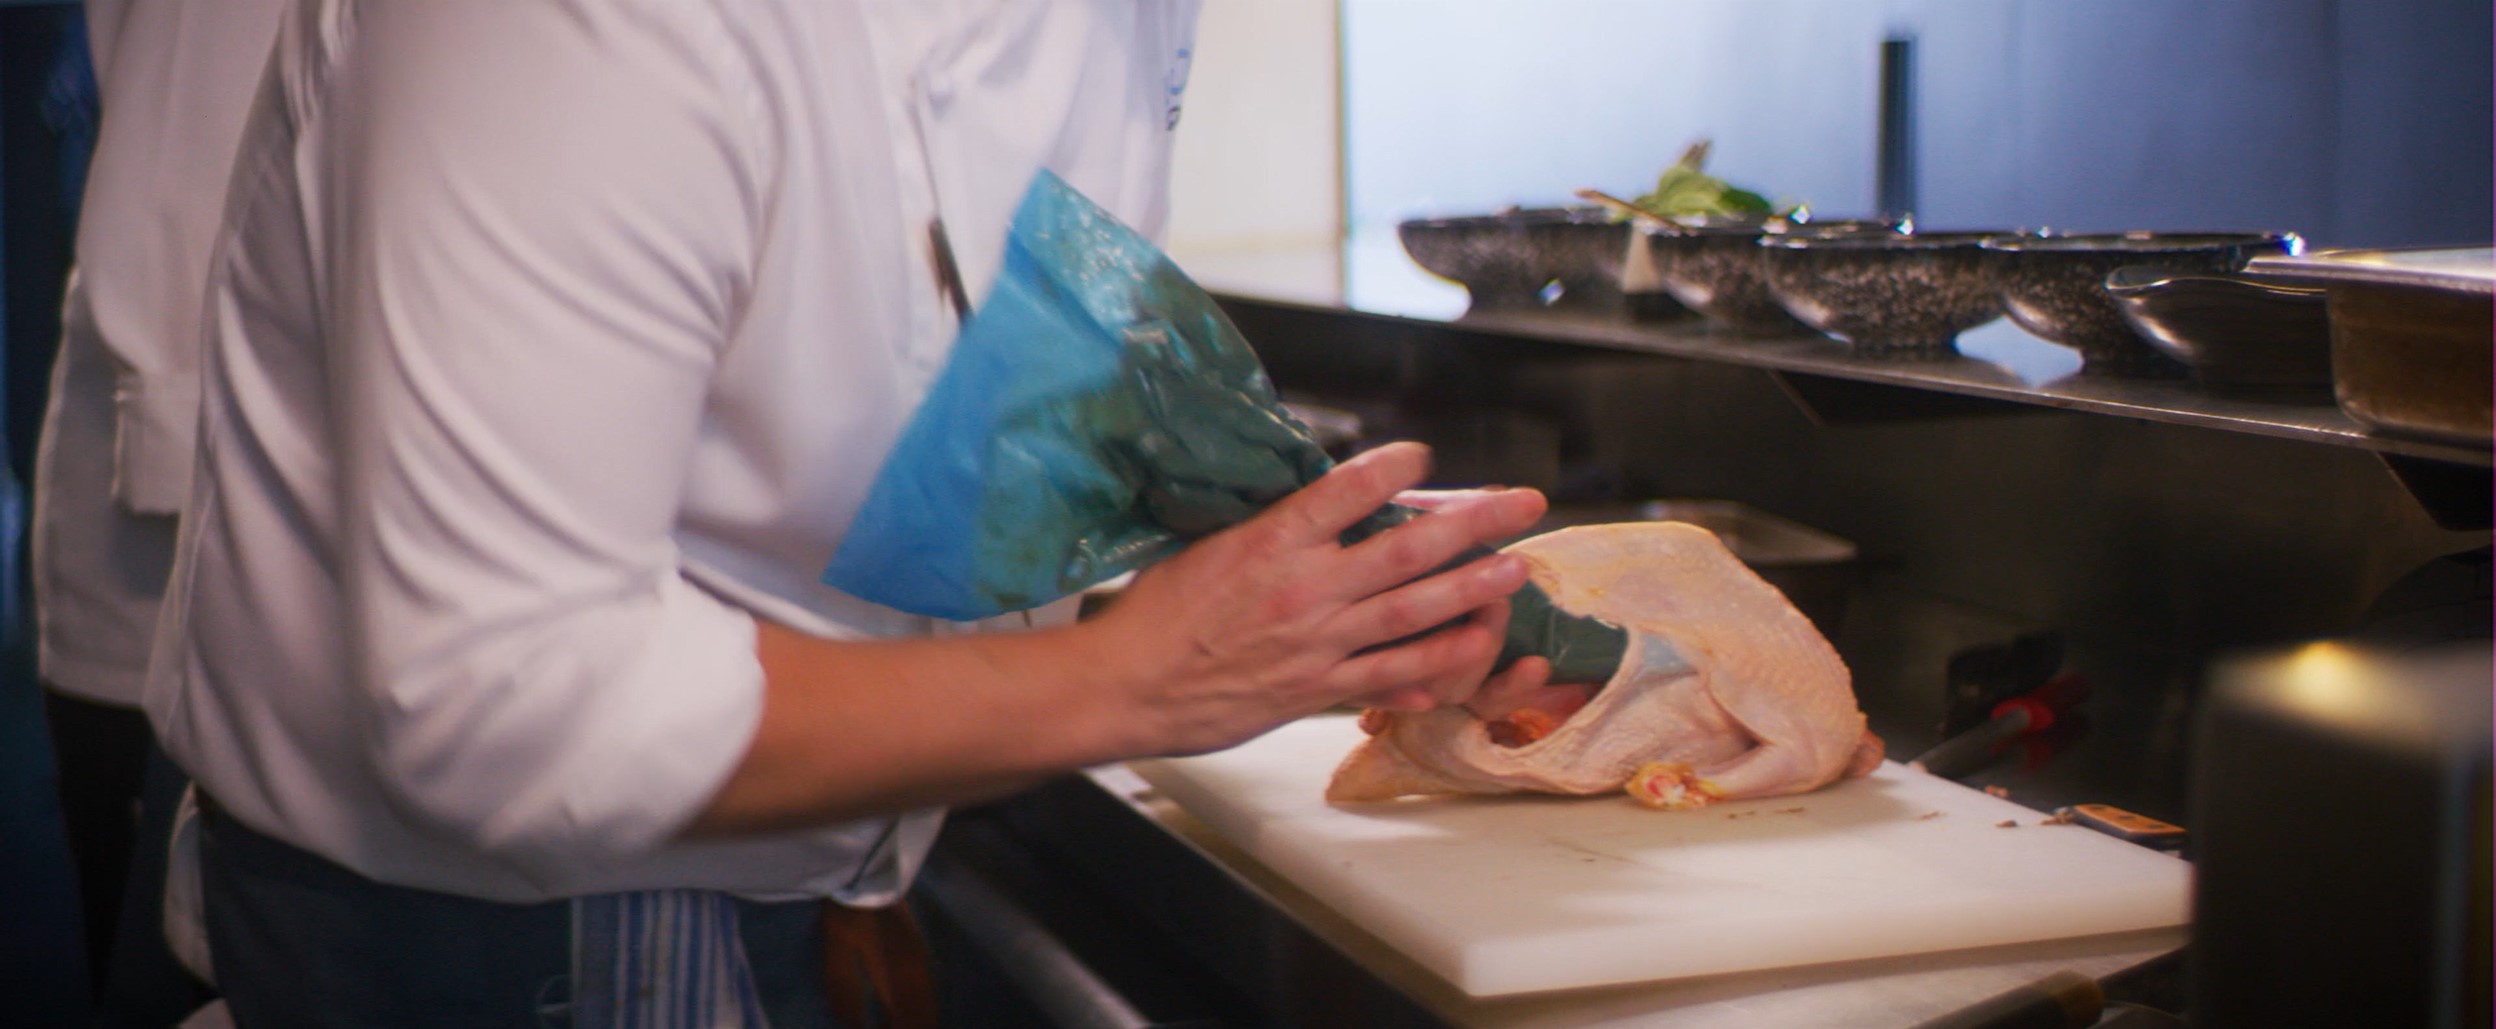 chef preparing chicken